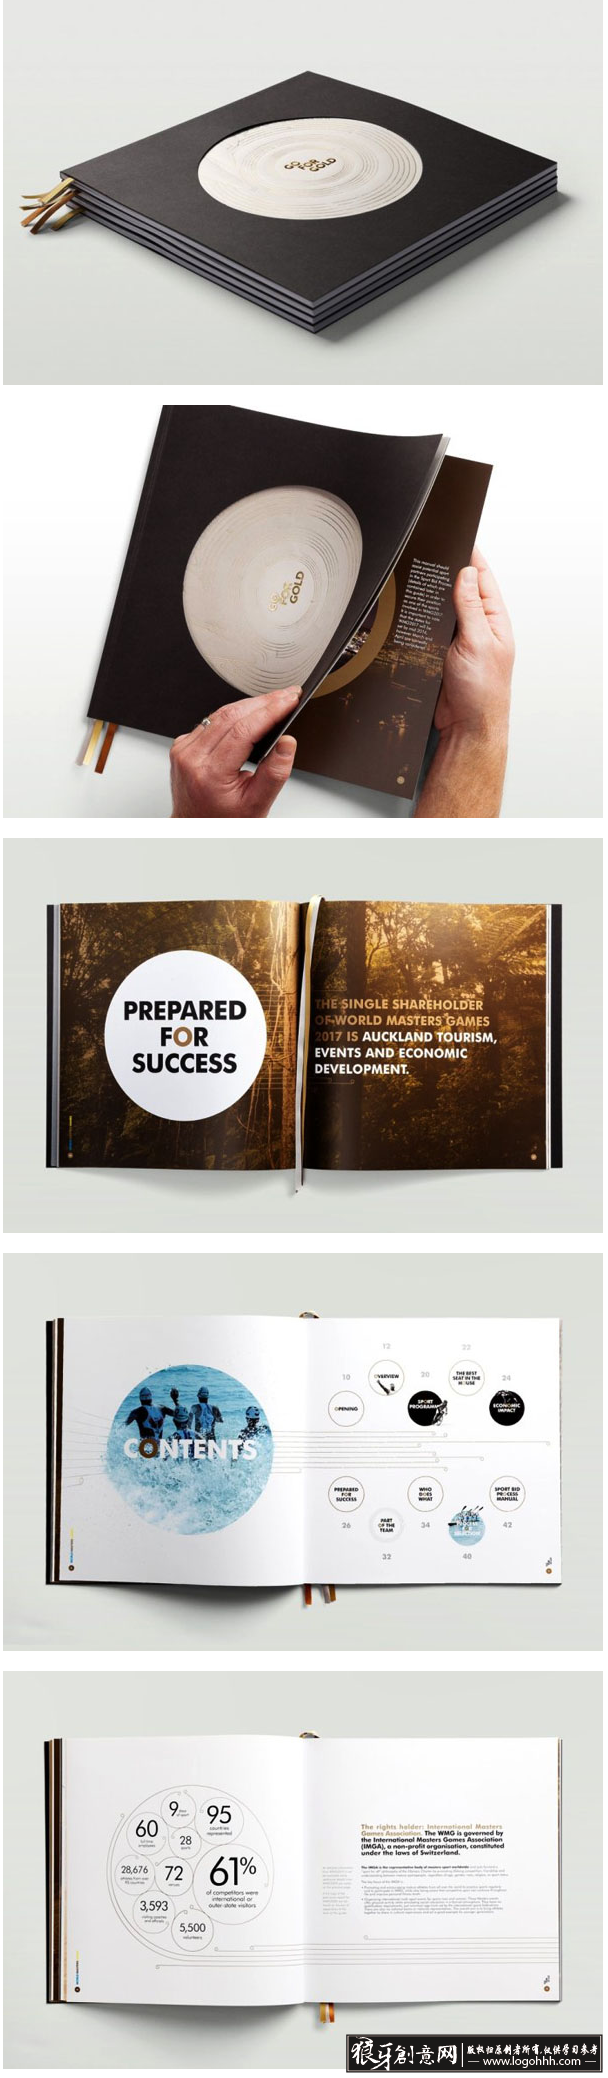 创意画册 画册书籍设计欣赏 黑色画册封面设计 高档画册封面 大气画册